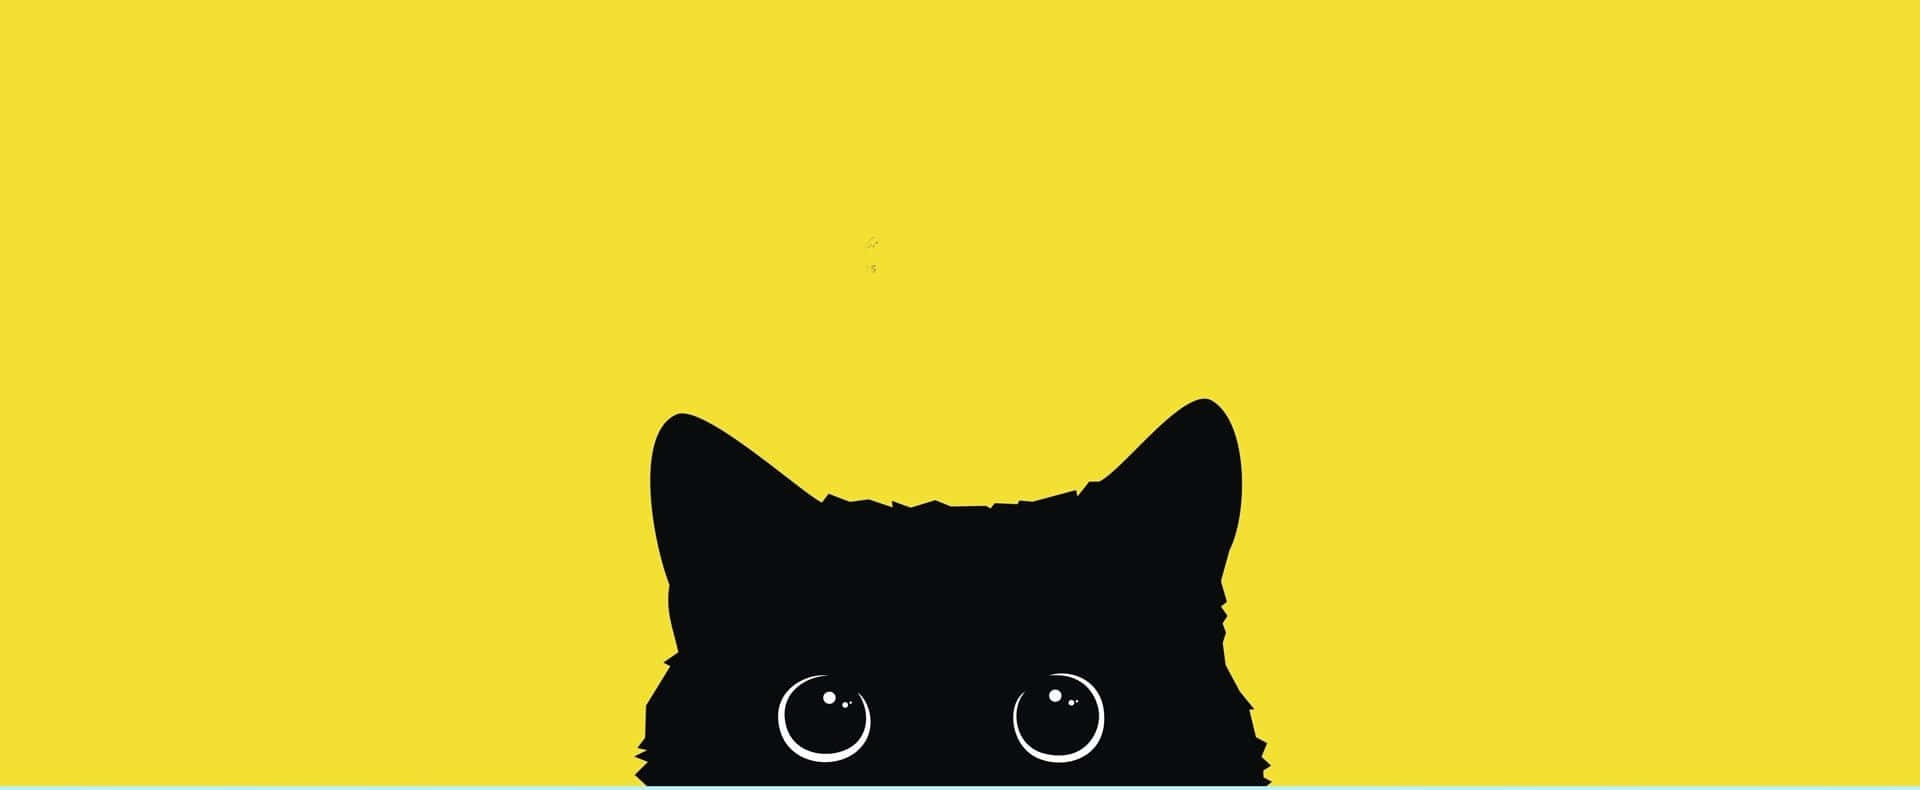 Eineschwarze Katze Mit Augen Auf Einem Gelben Hintergrund Wallpaper